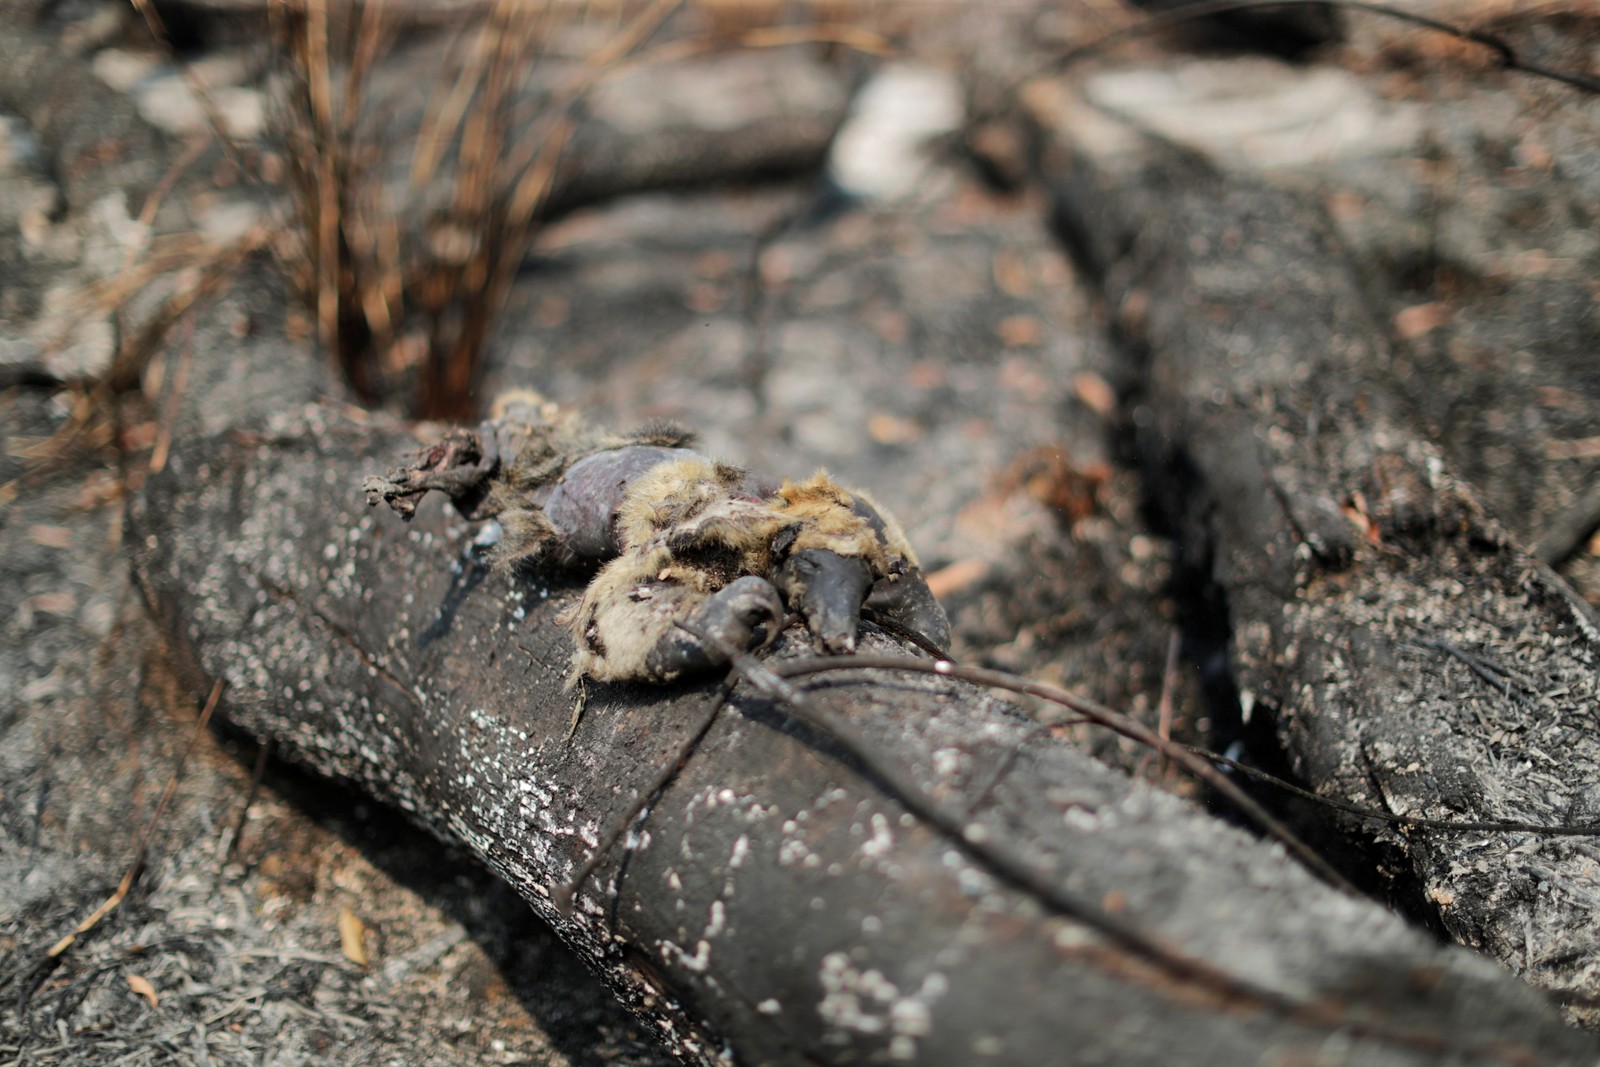 Um tamanduá morto é visto em um tronco queimado em uma área da selva amazônica, perto de Apuí, no AmazonasREUTERS